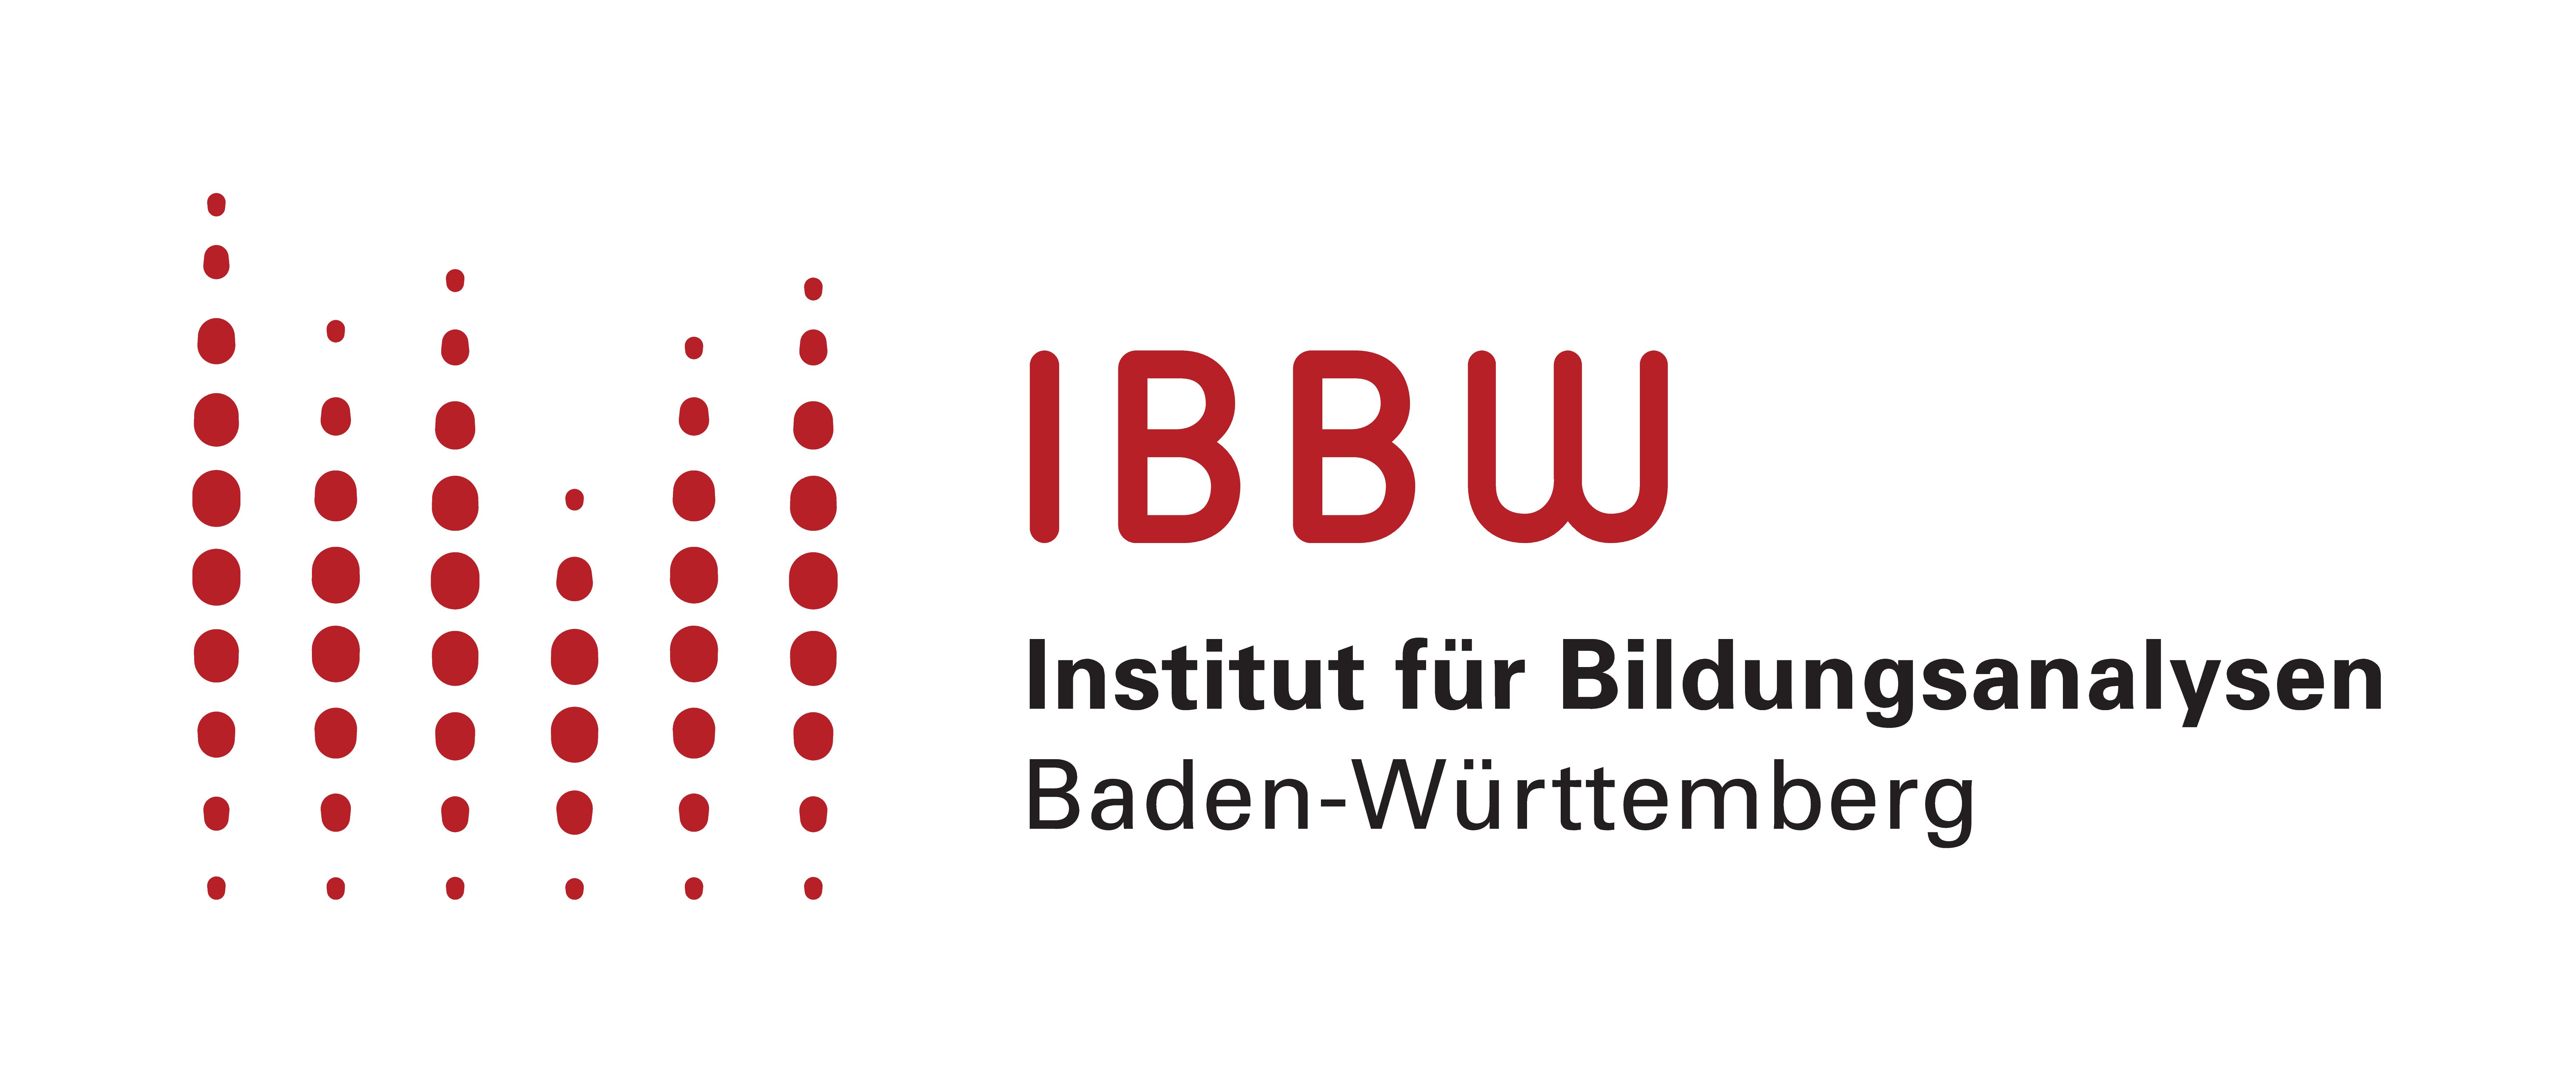 IBBW Institut für Bildungsanalysen Baden-Württemberg